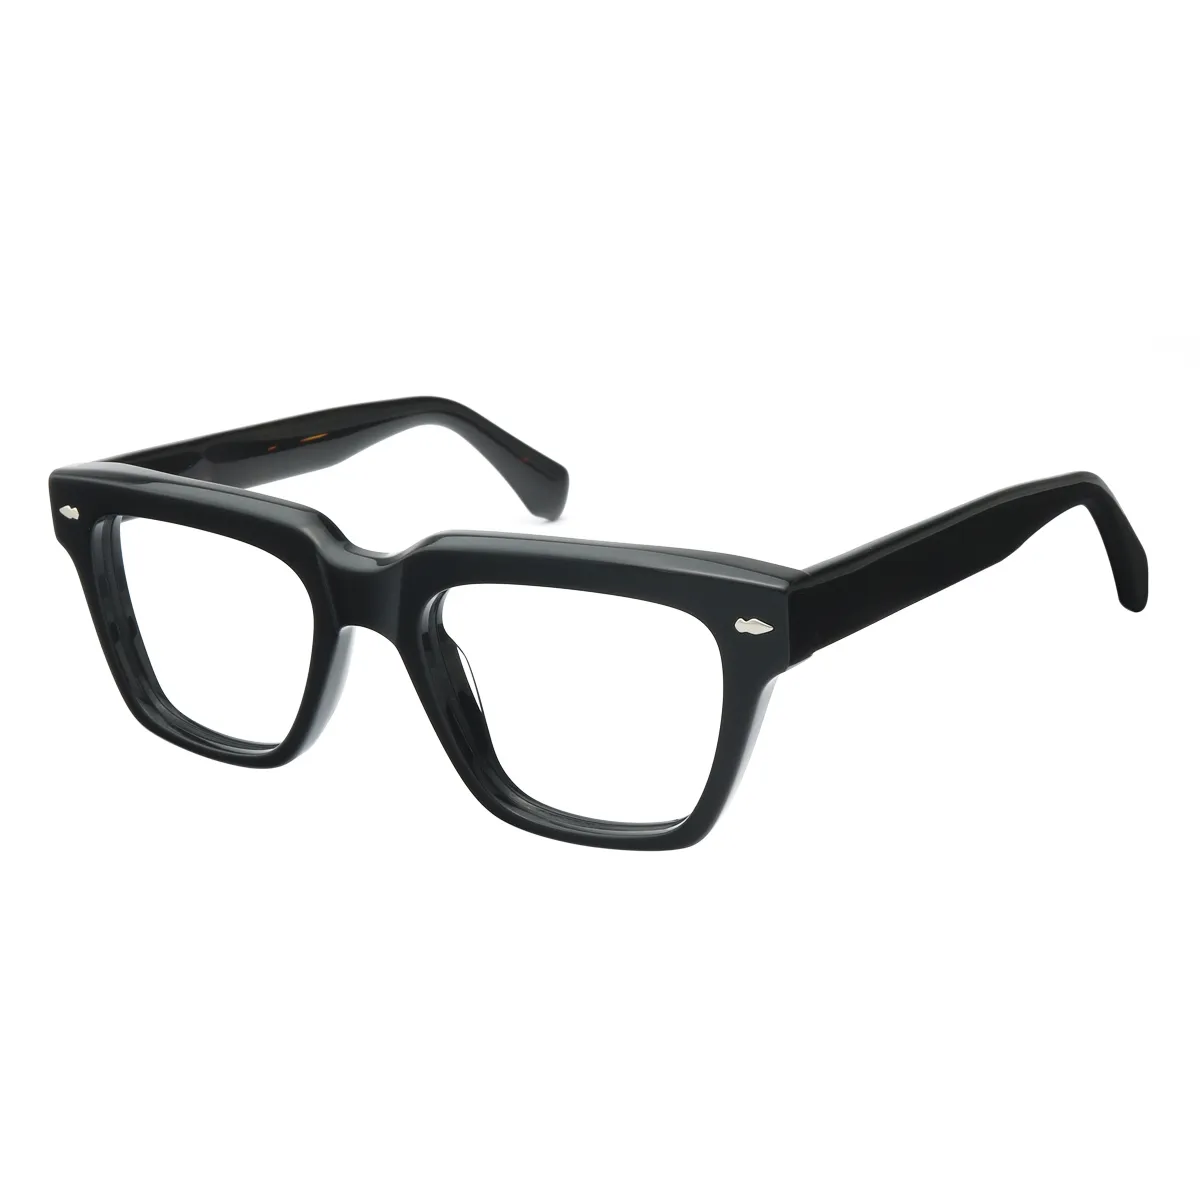 Harlowe - Square Black Glasses for Men & Women - EFE